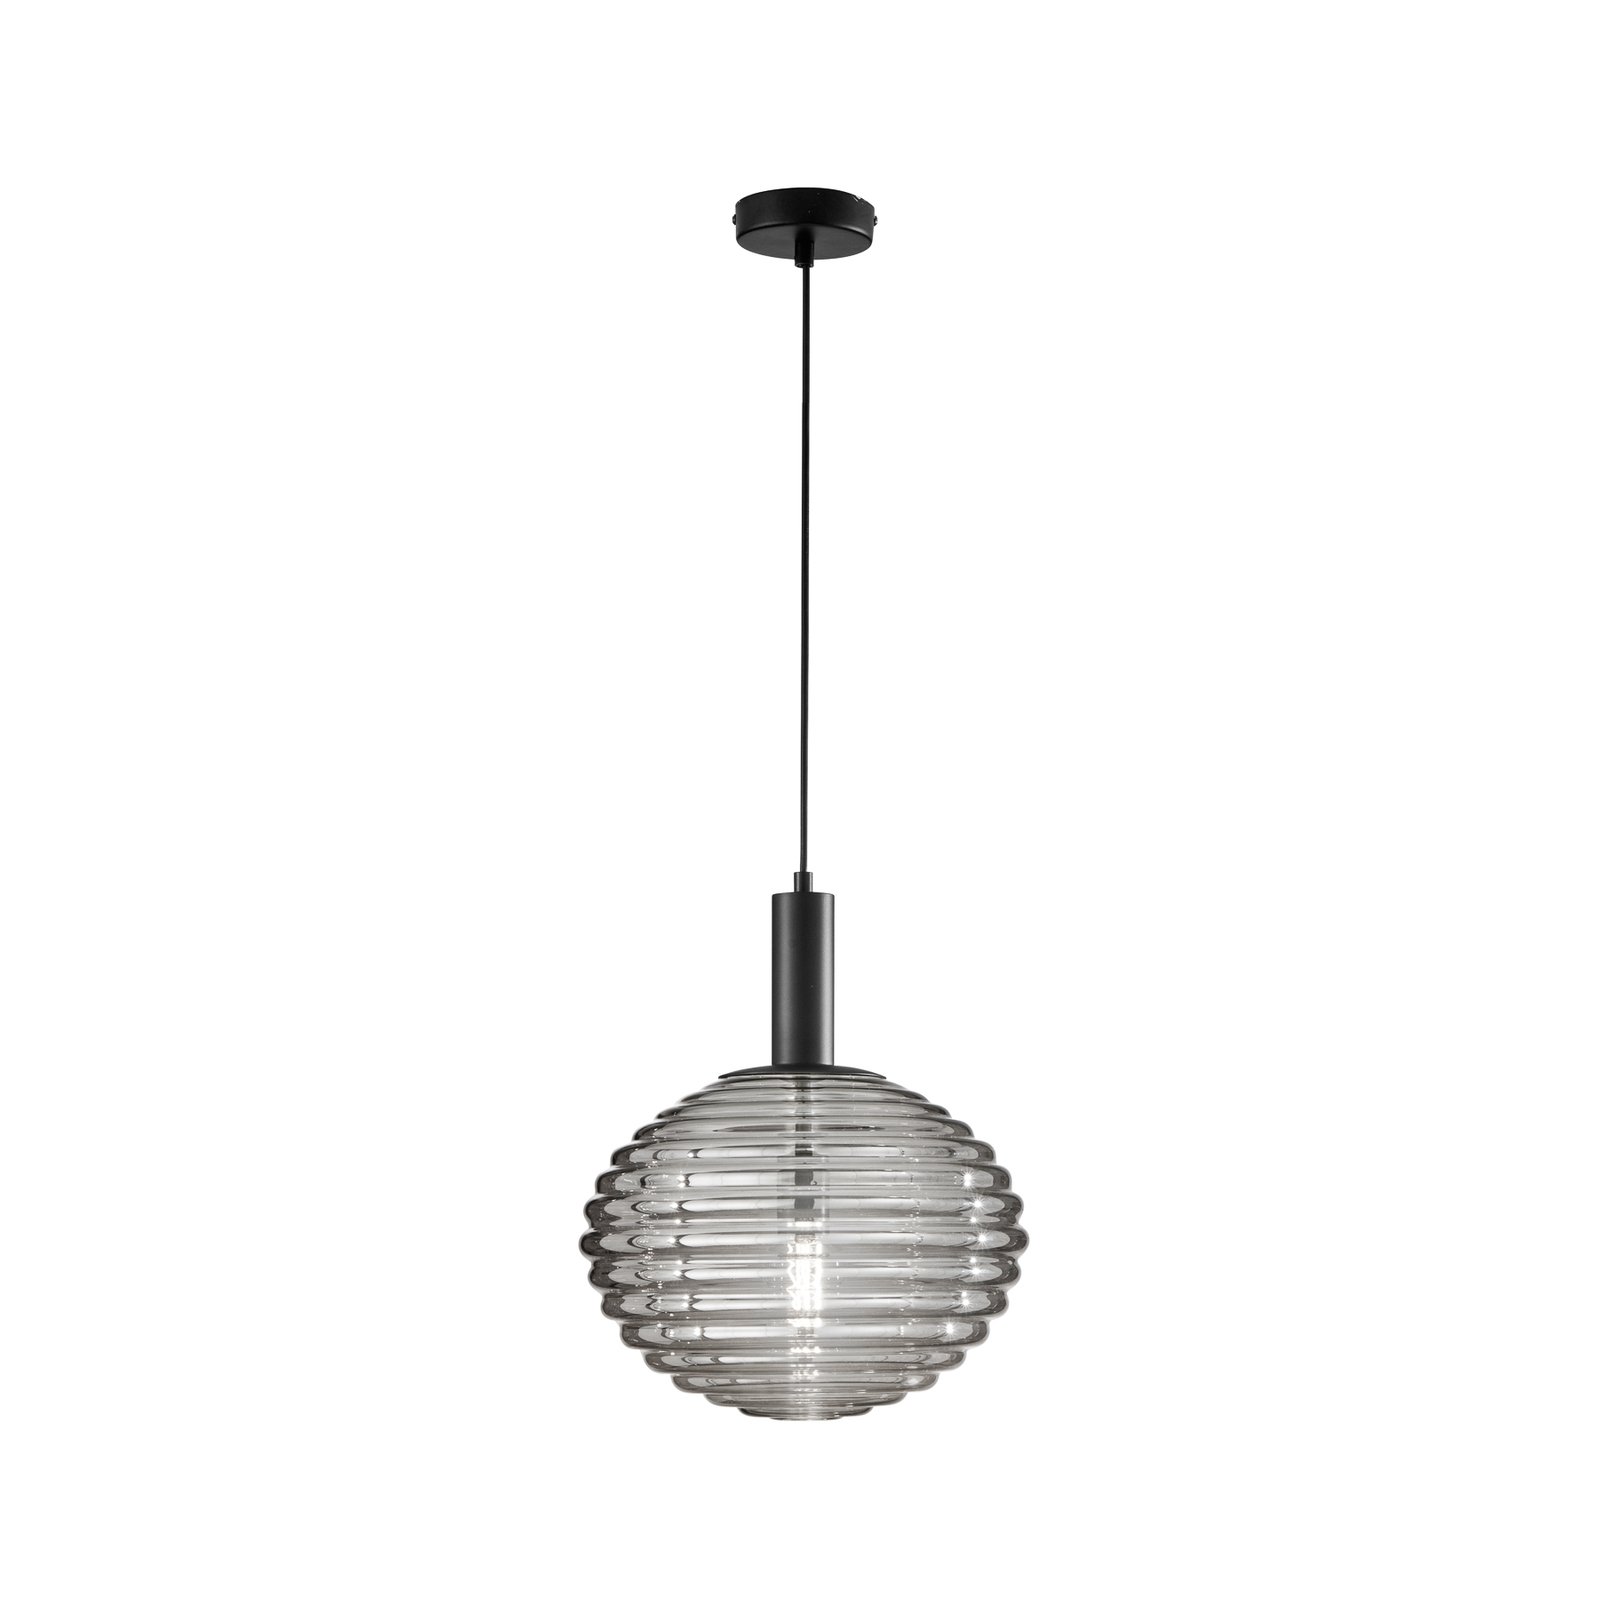 Ripple hanglamp, zwart/rookgrijs, Ø 32 cm